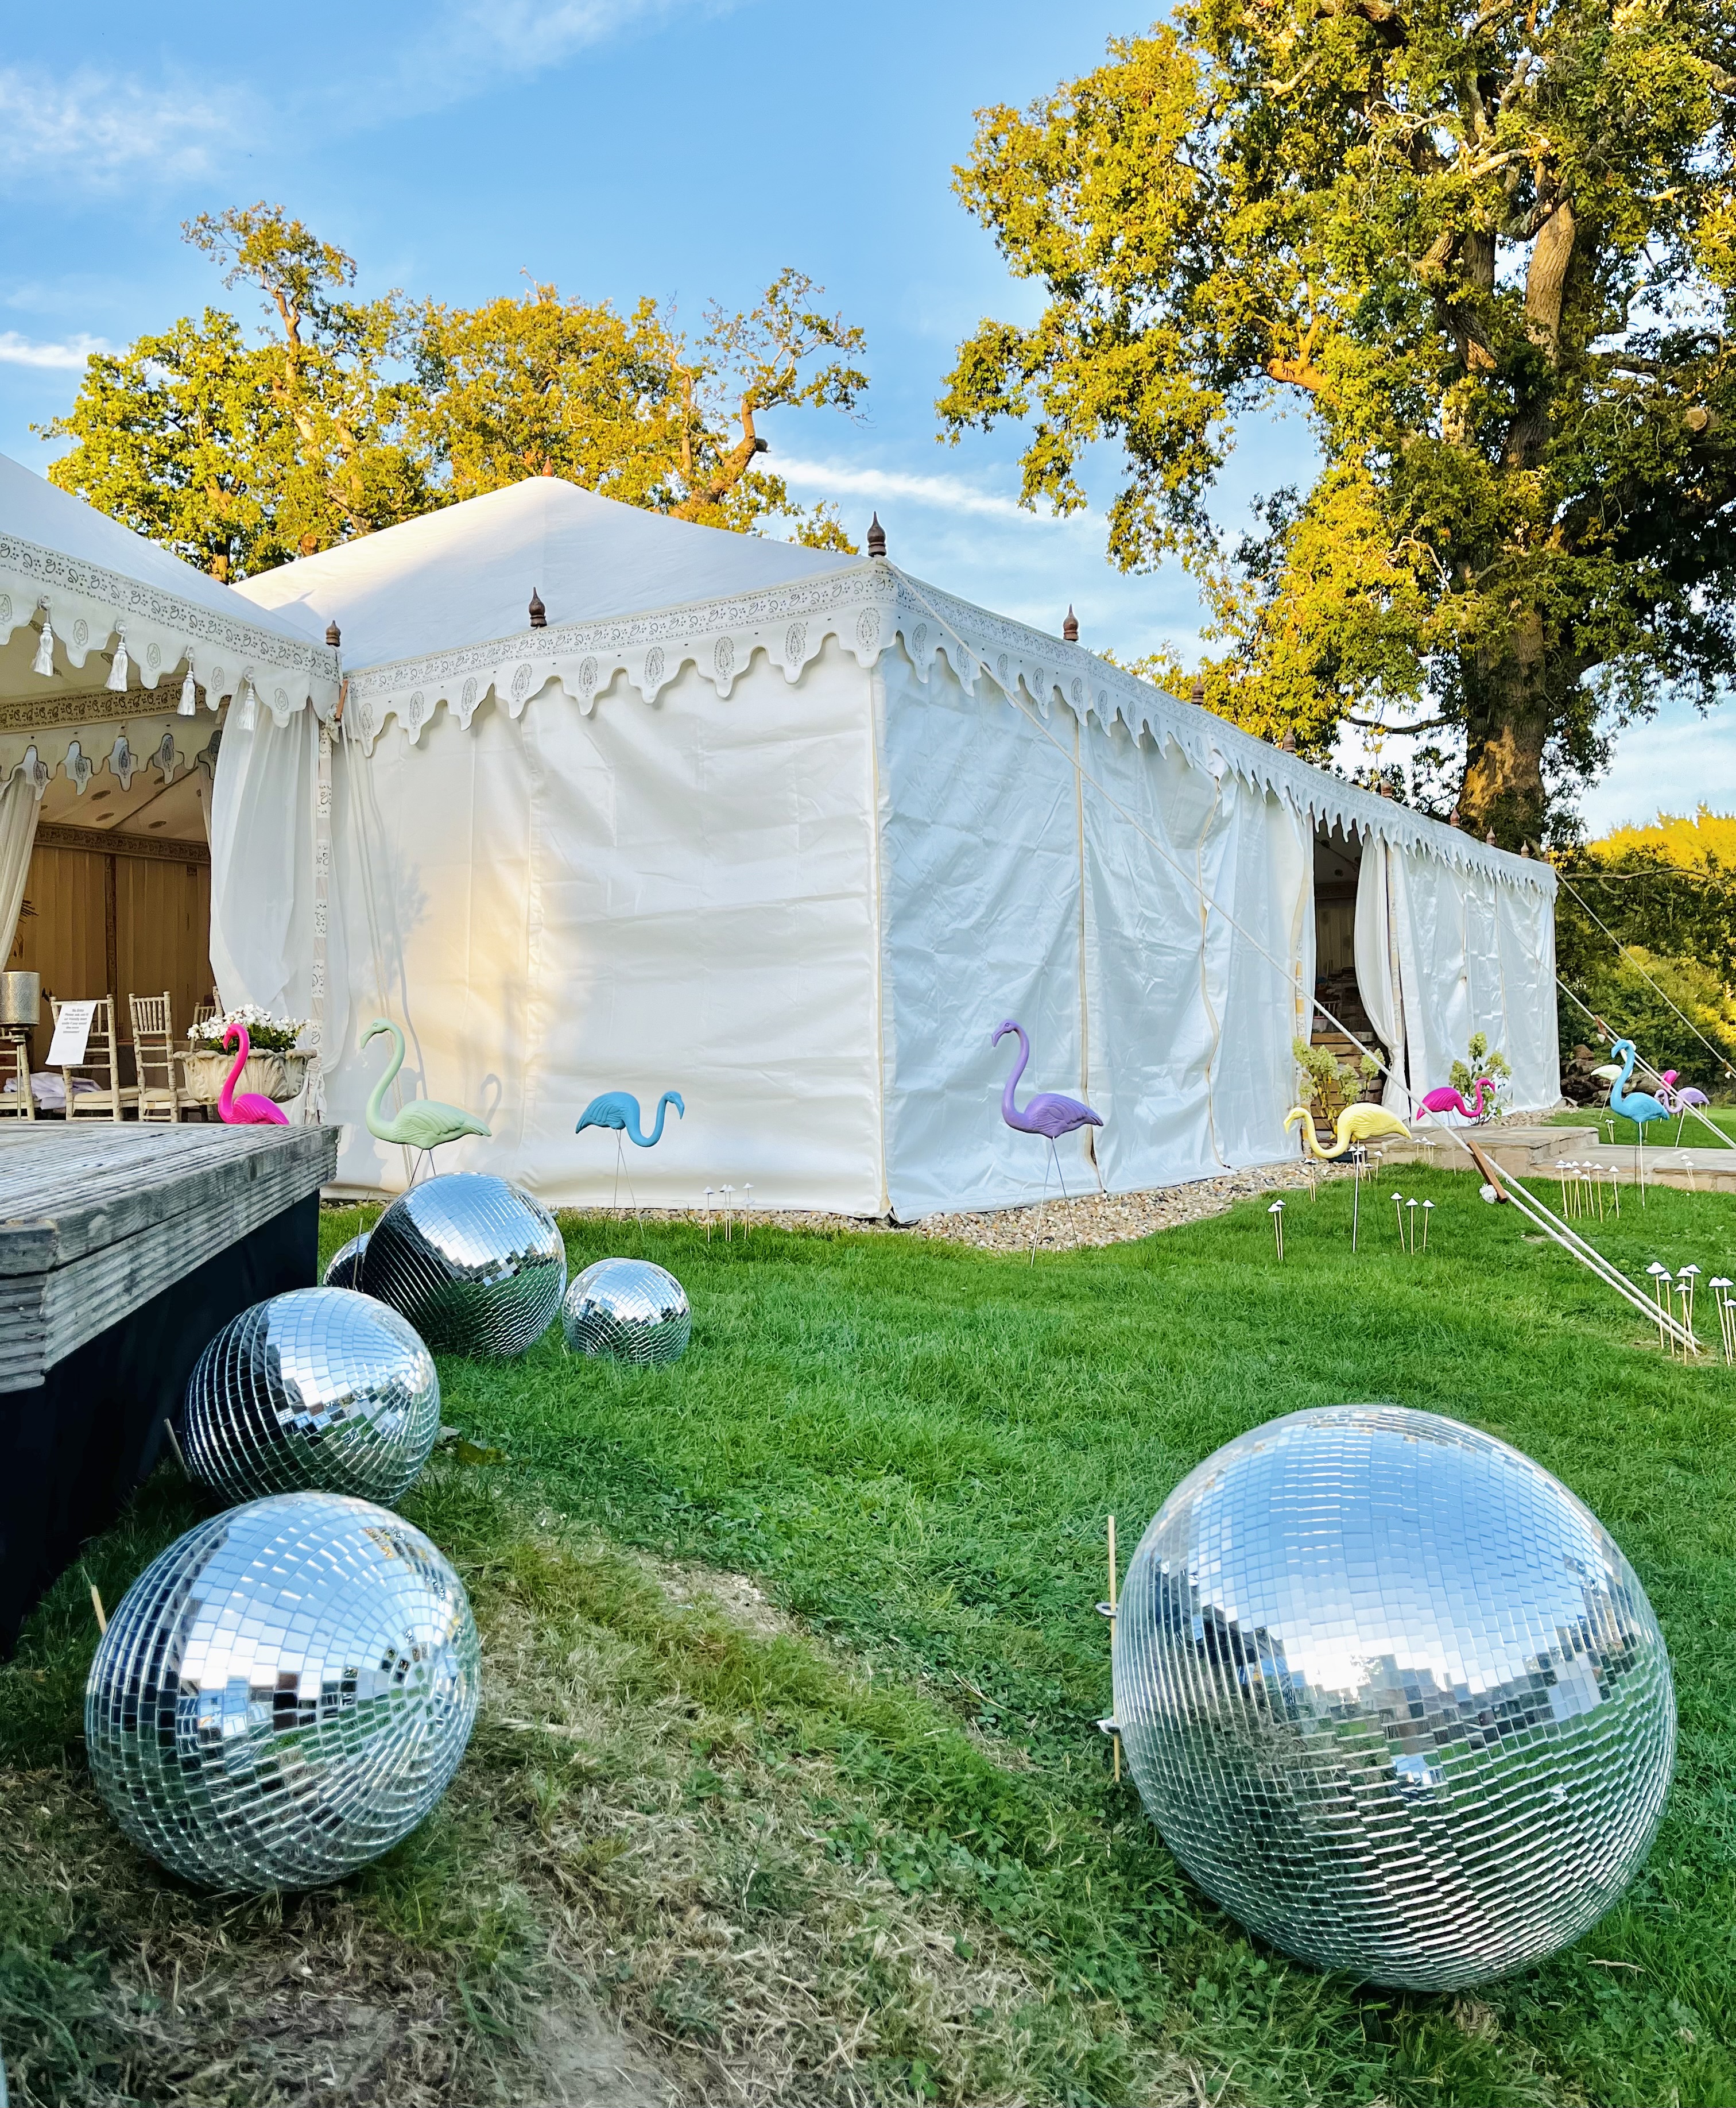 Camp disco gay wedding venue trading boundaries Sussex 